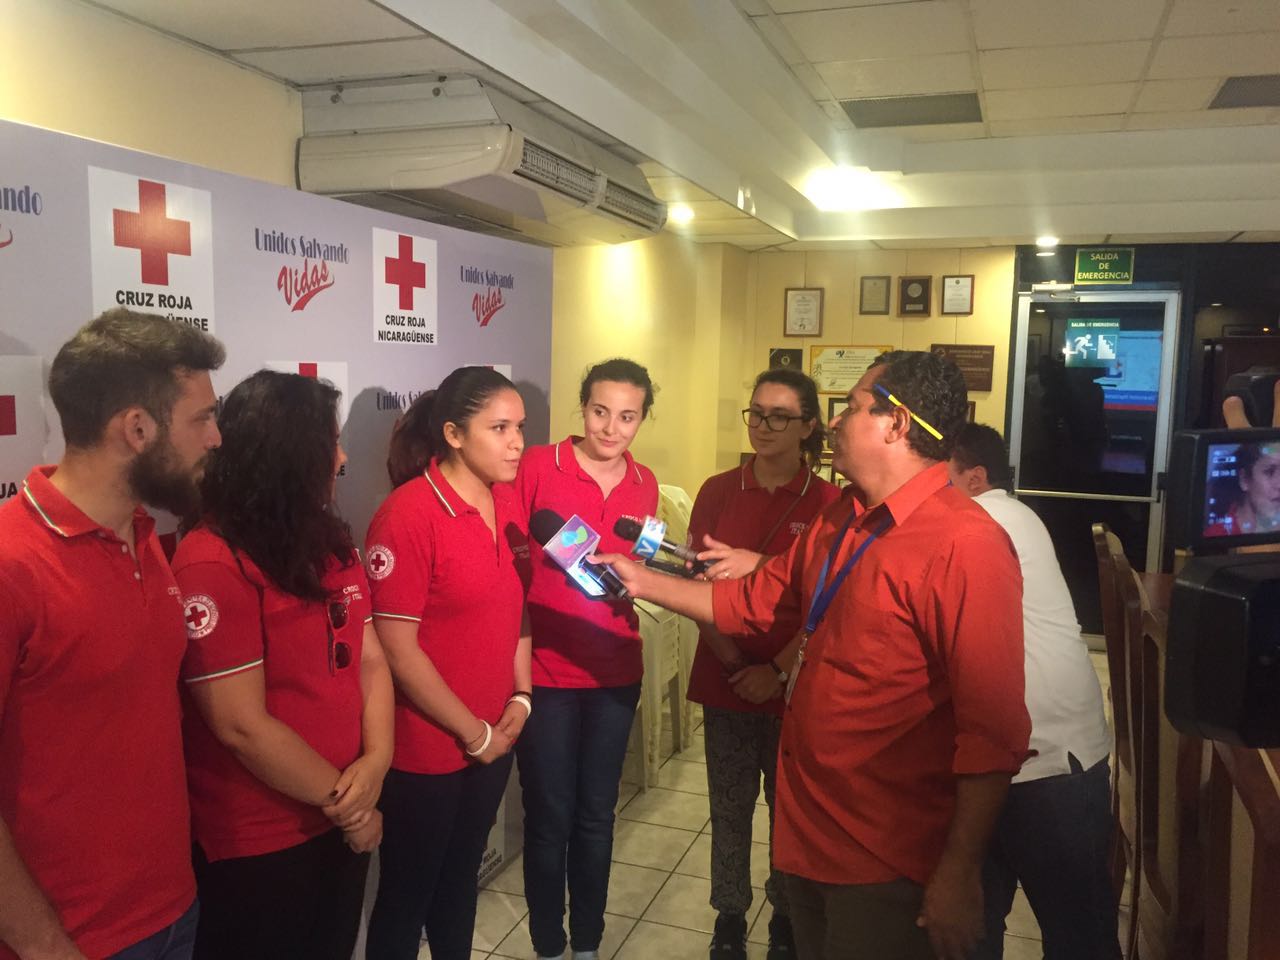 iovani della Croce Rossa in Nicaragua